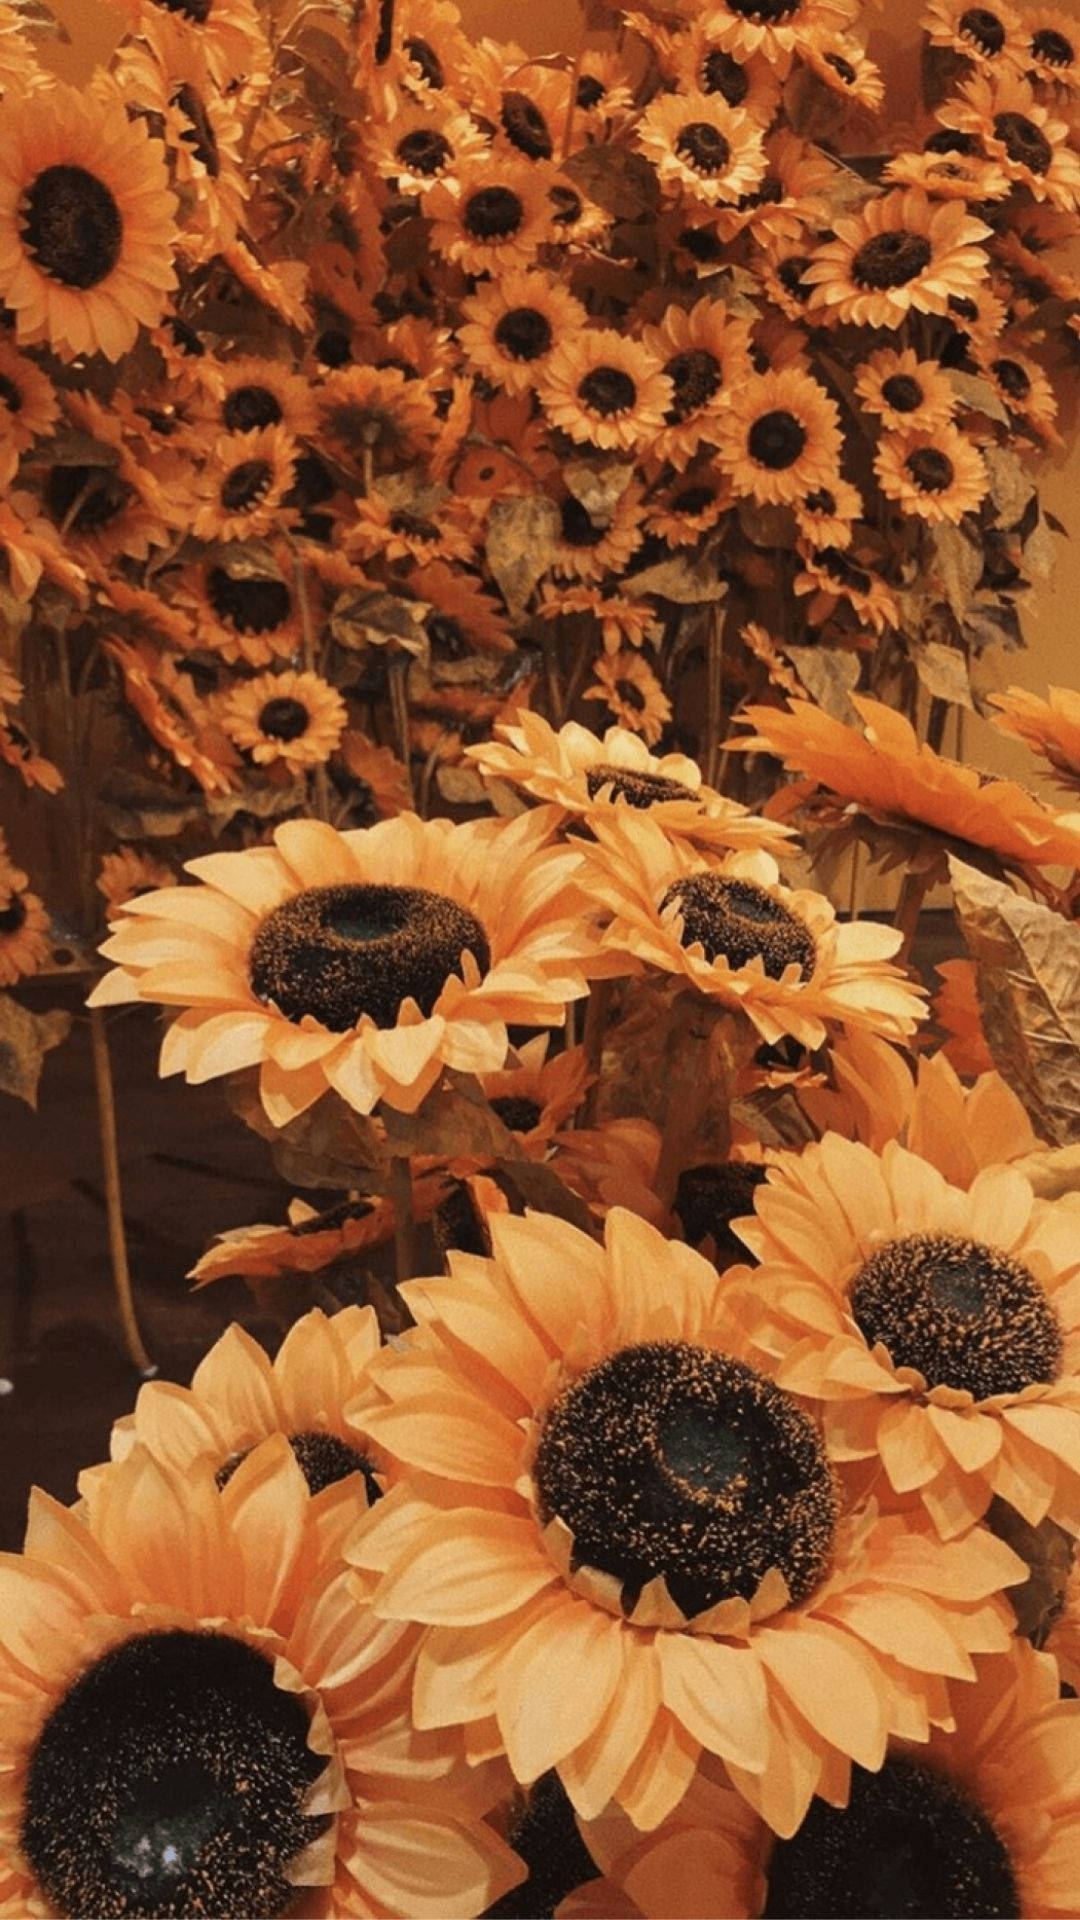 Aesthetic Sunflowers Orange Background Background